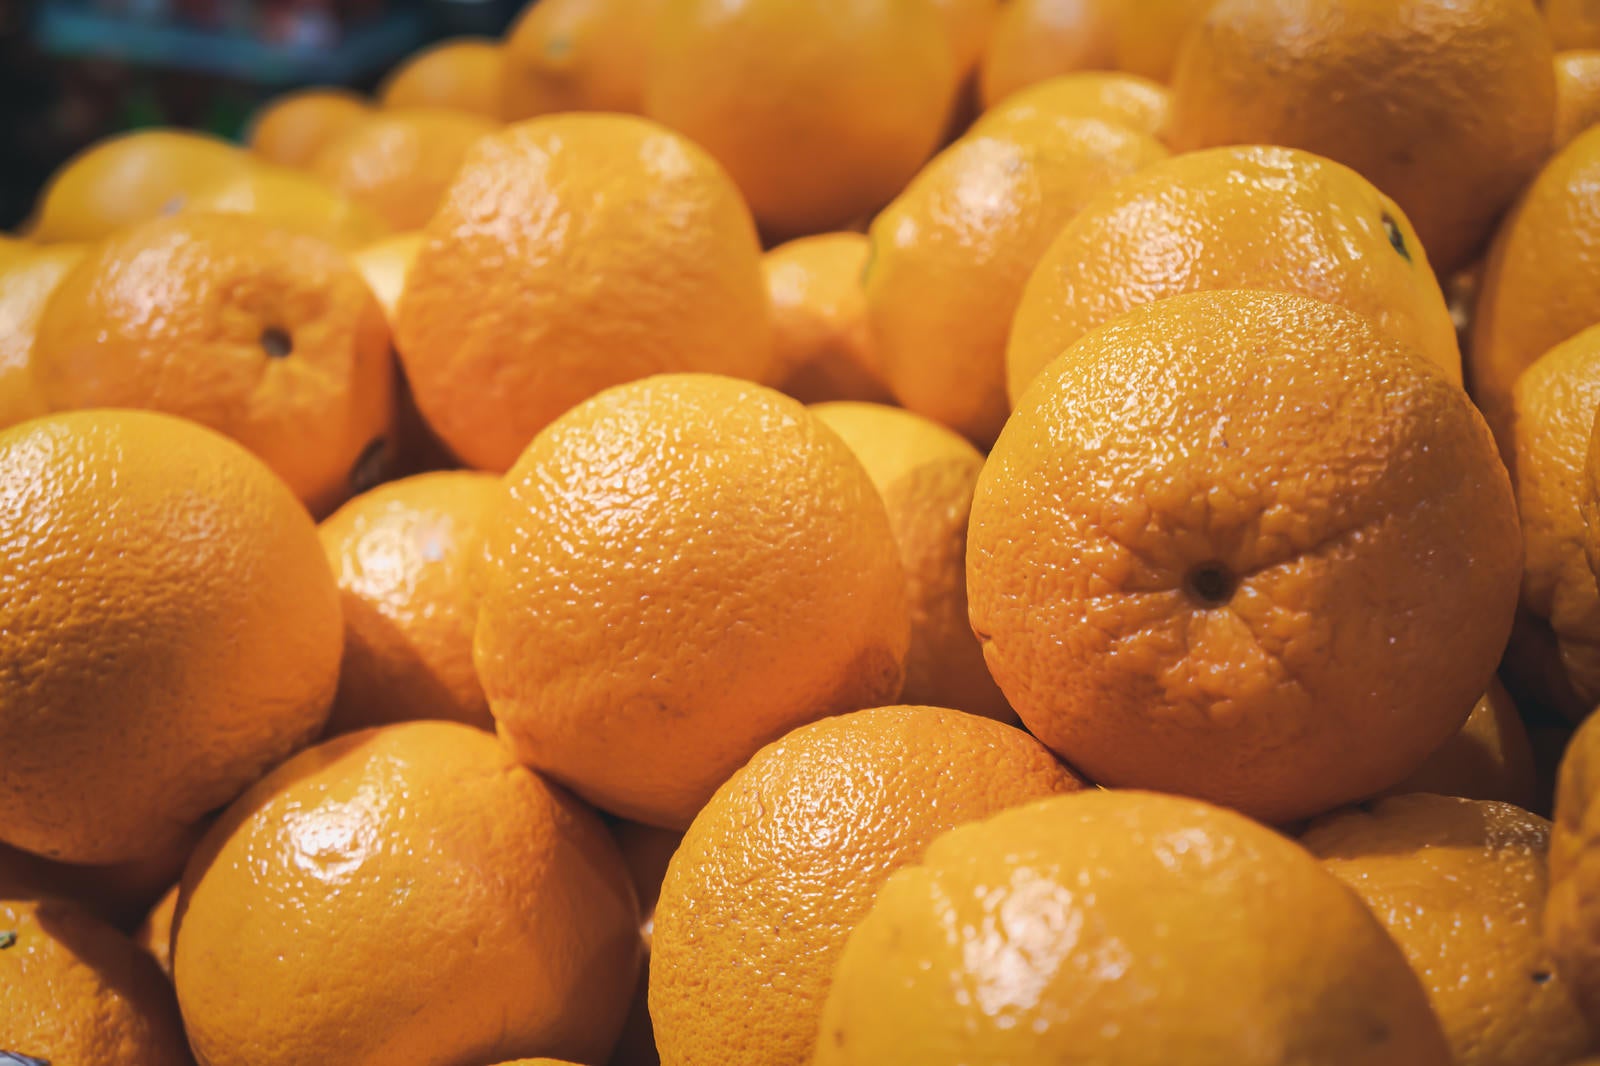 「スーパーの果物コーナーに積まれた大量のオレンジ」の写真